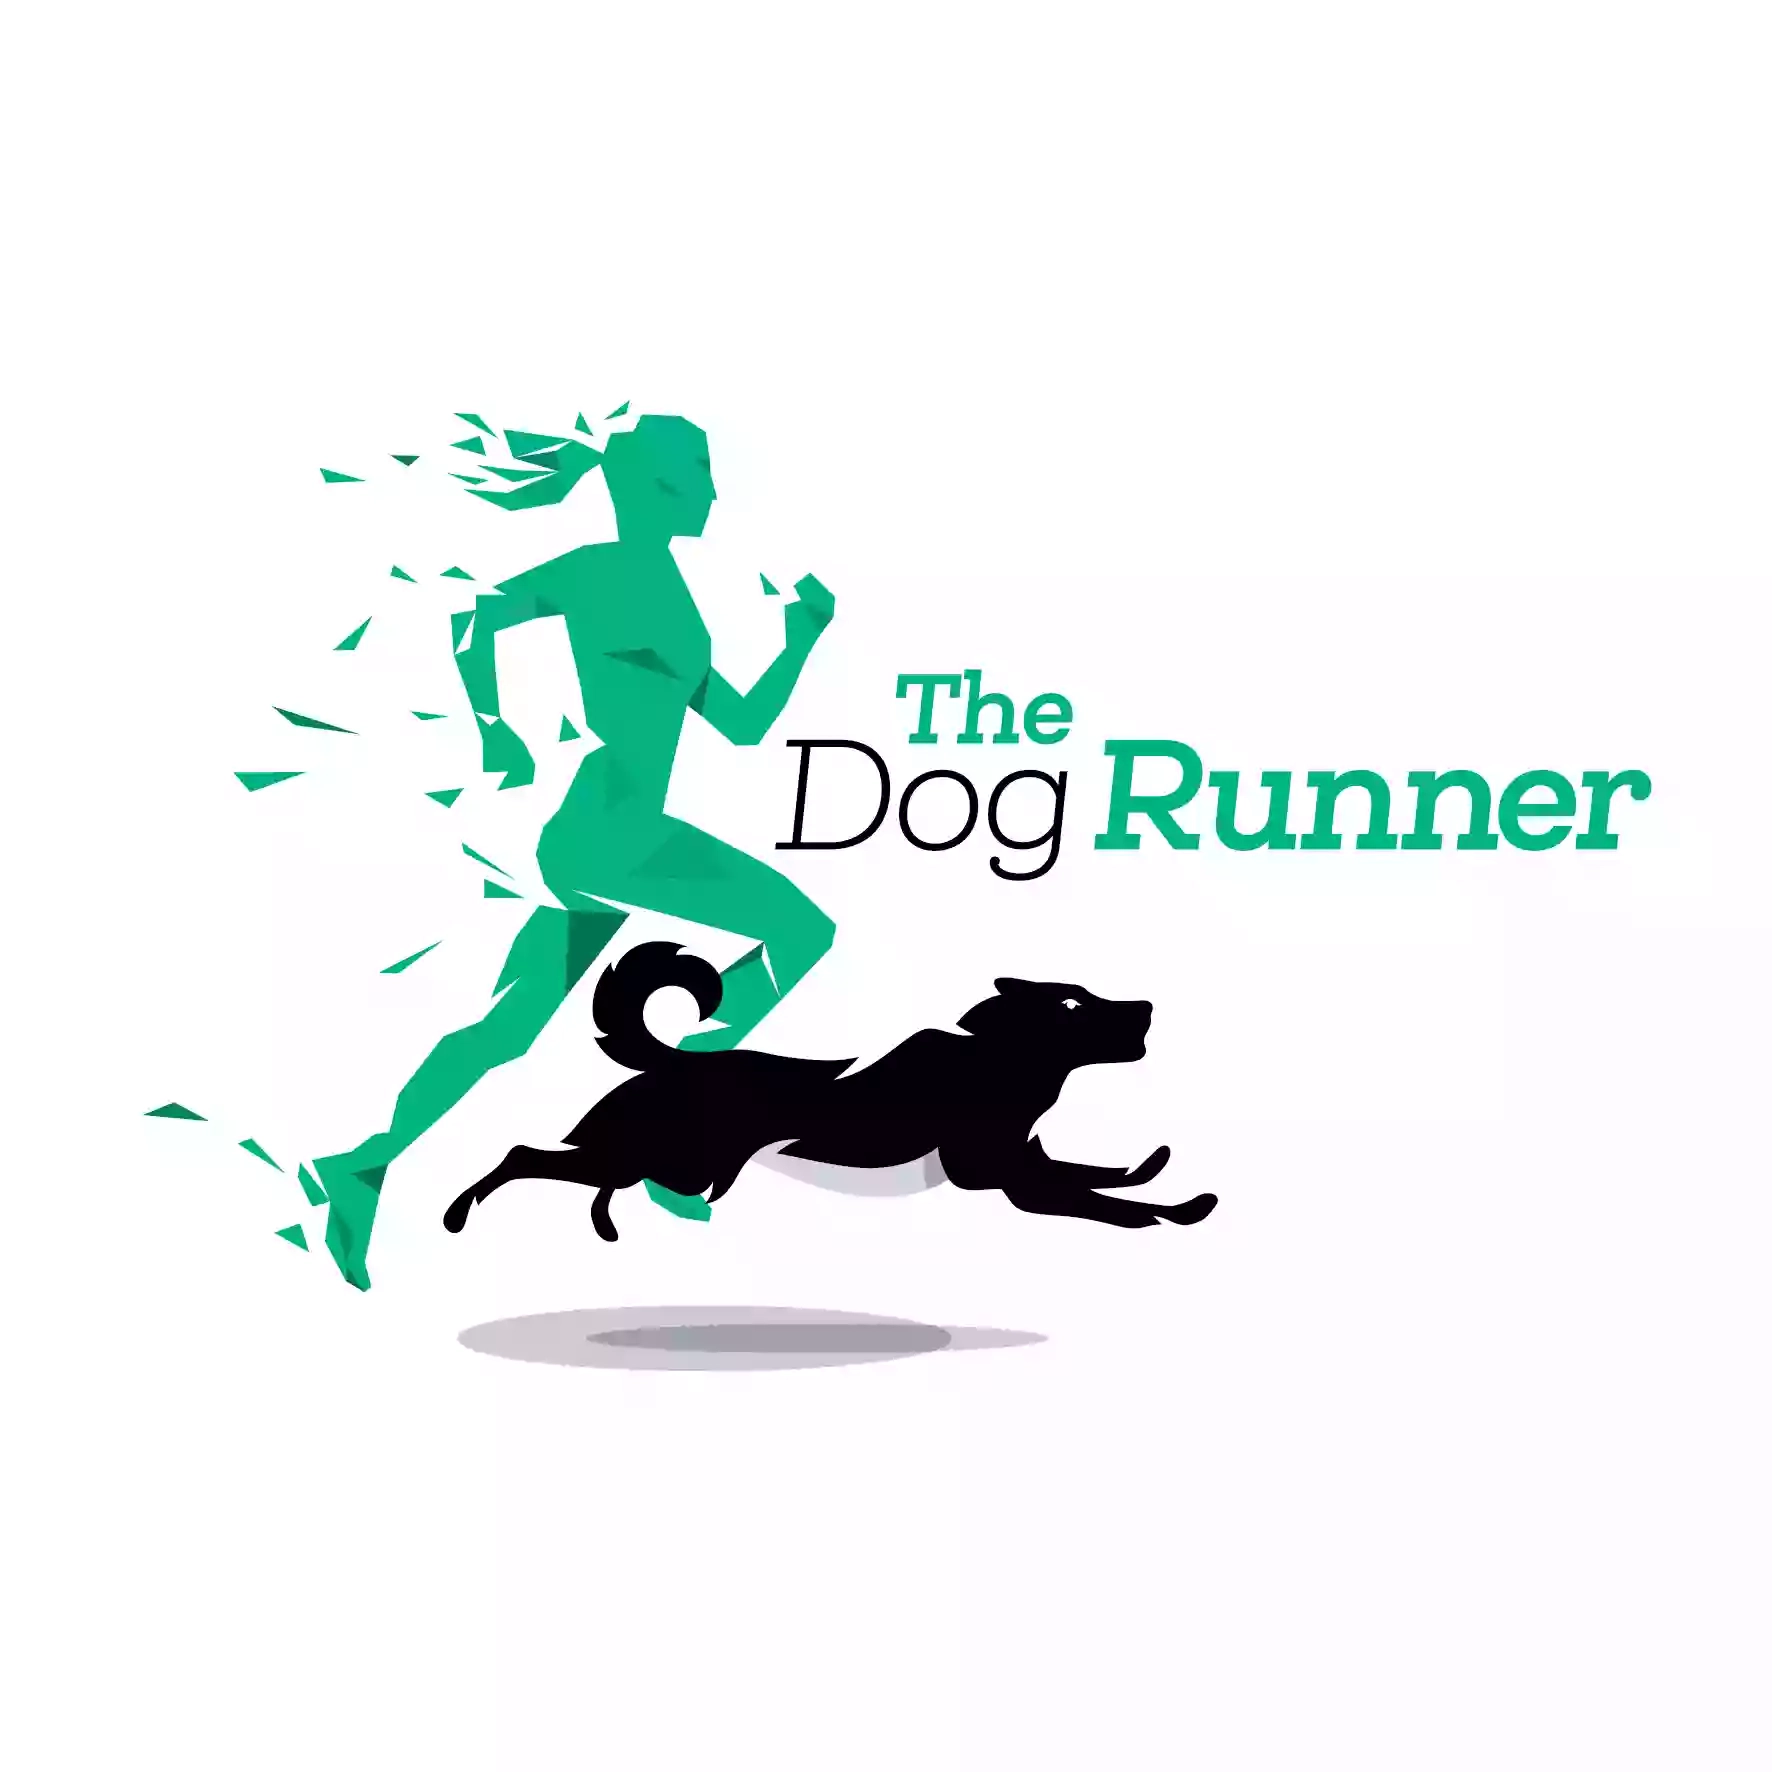 The Dog Runner